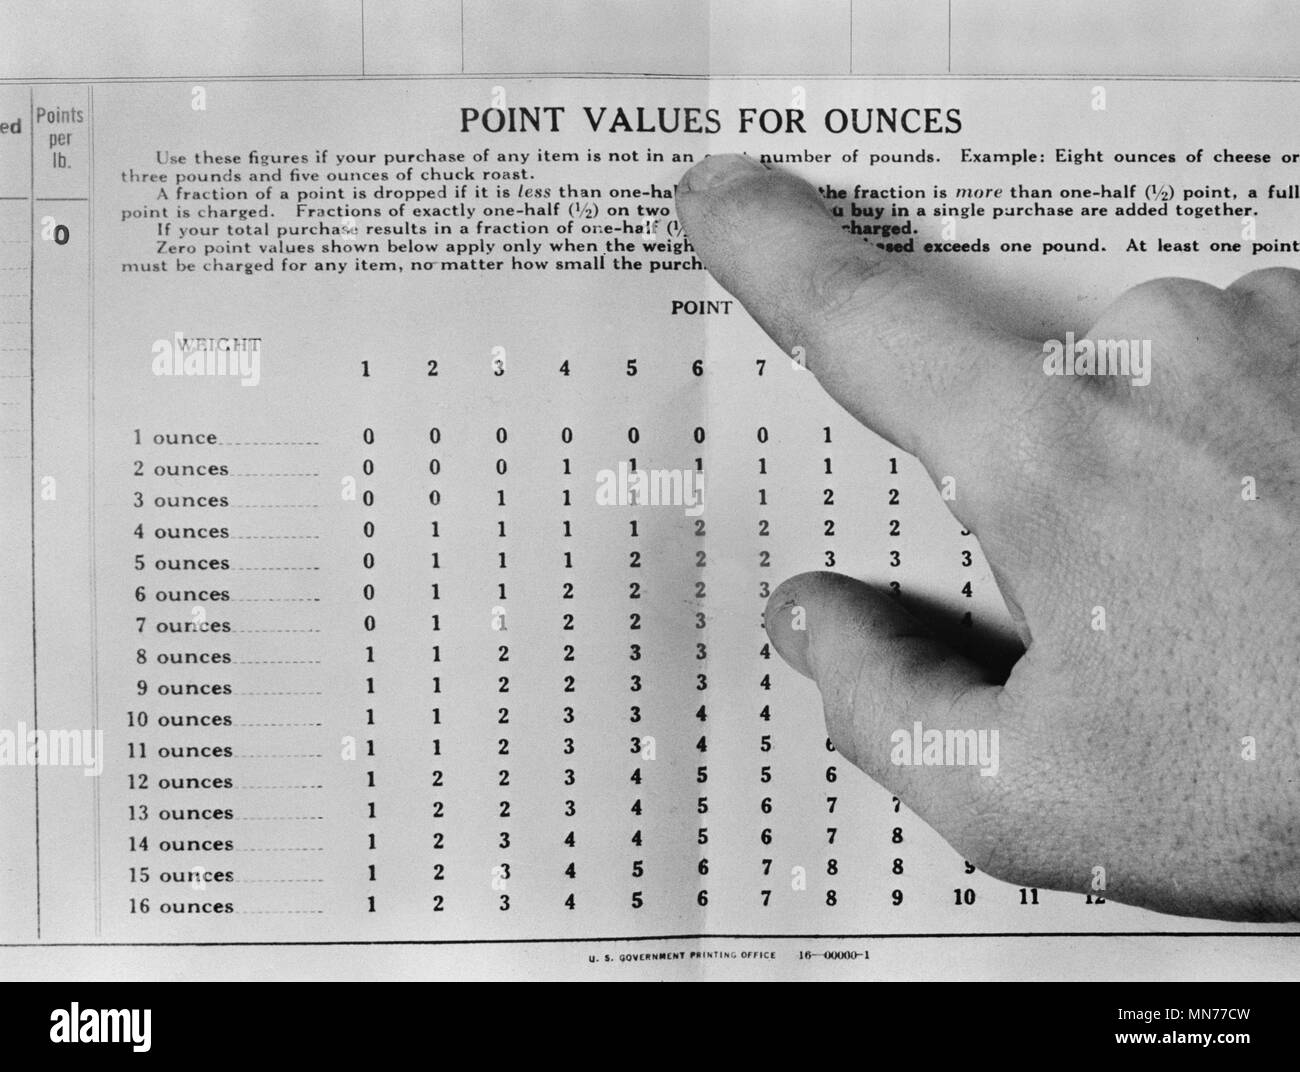 Pointer du doigt à 'Valeurs pour onces' Carte d'information pour les produits alimentaires rationnés pendant la Seconde Guerre mondiale, Alfred T. Palmer pour l'Office of War Information, Mars 1943 Banque D'Images